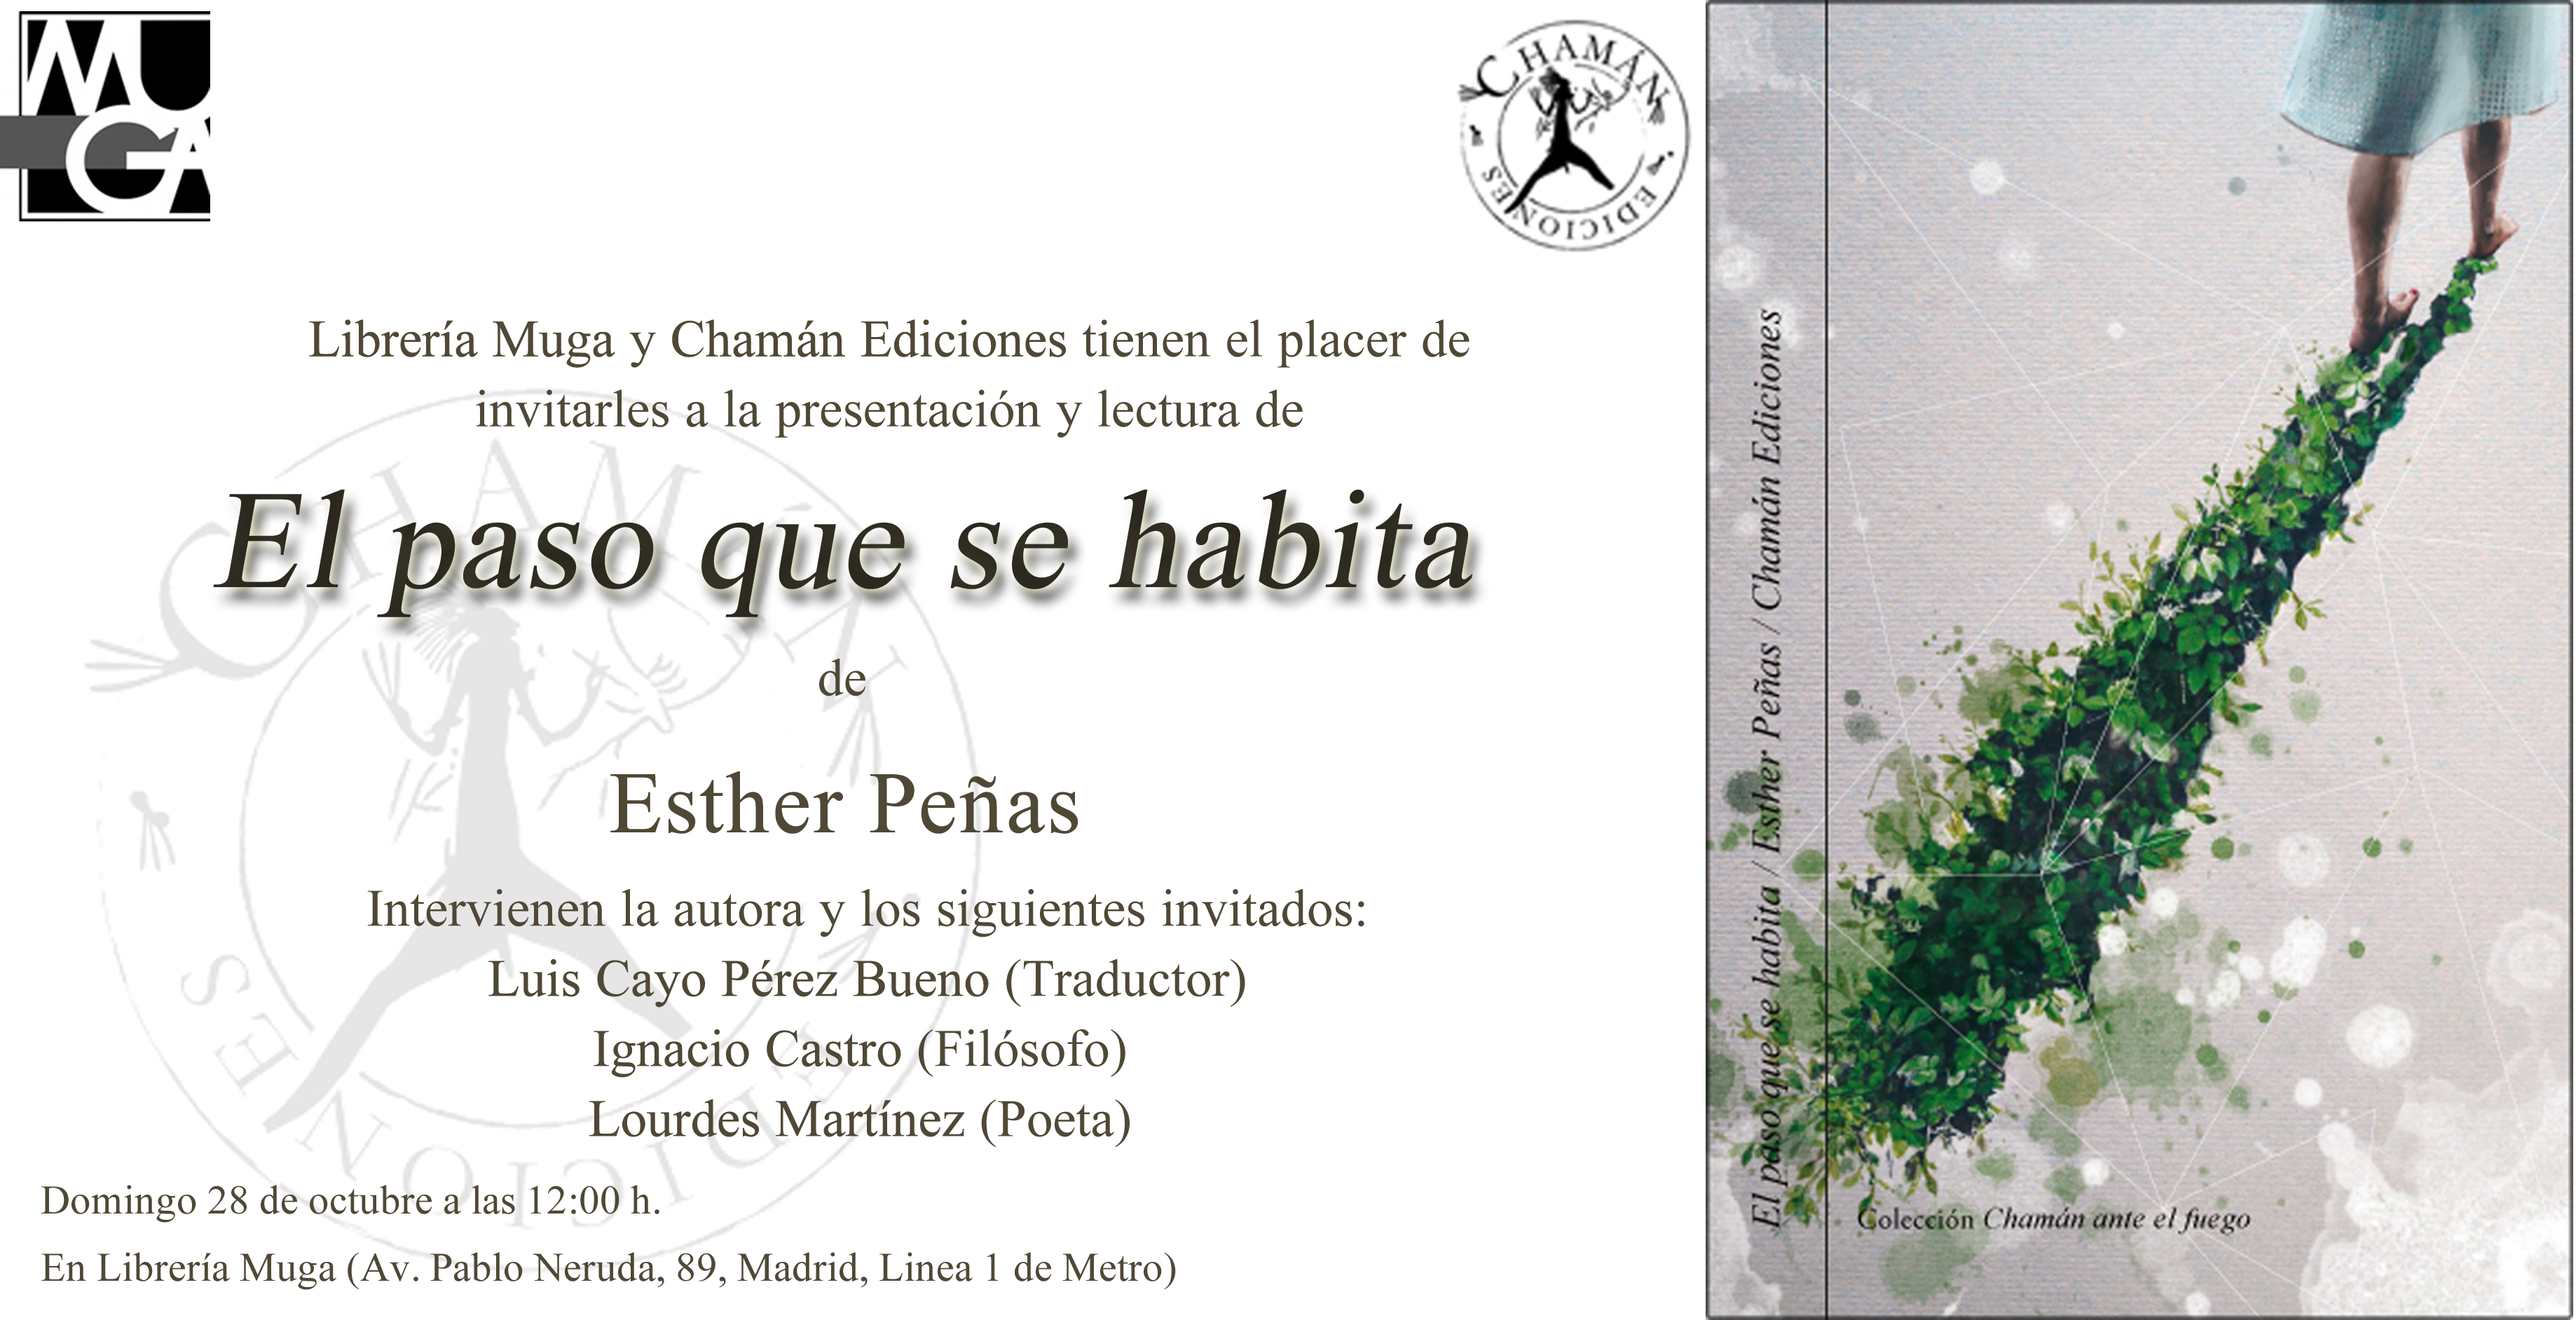 Invitación "el paso que se habita" de Esther Peñas, Librería muga